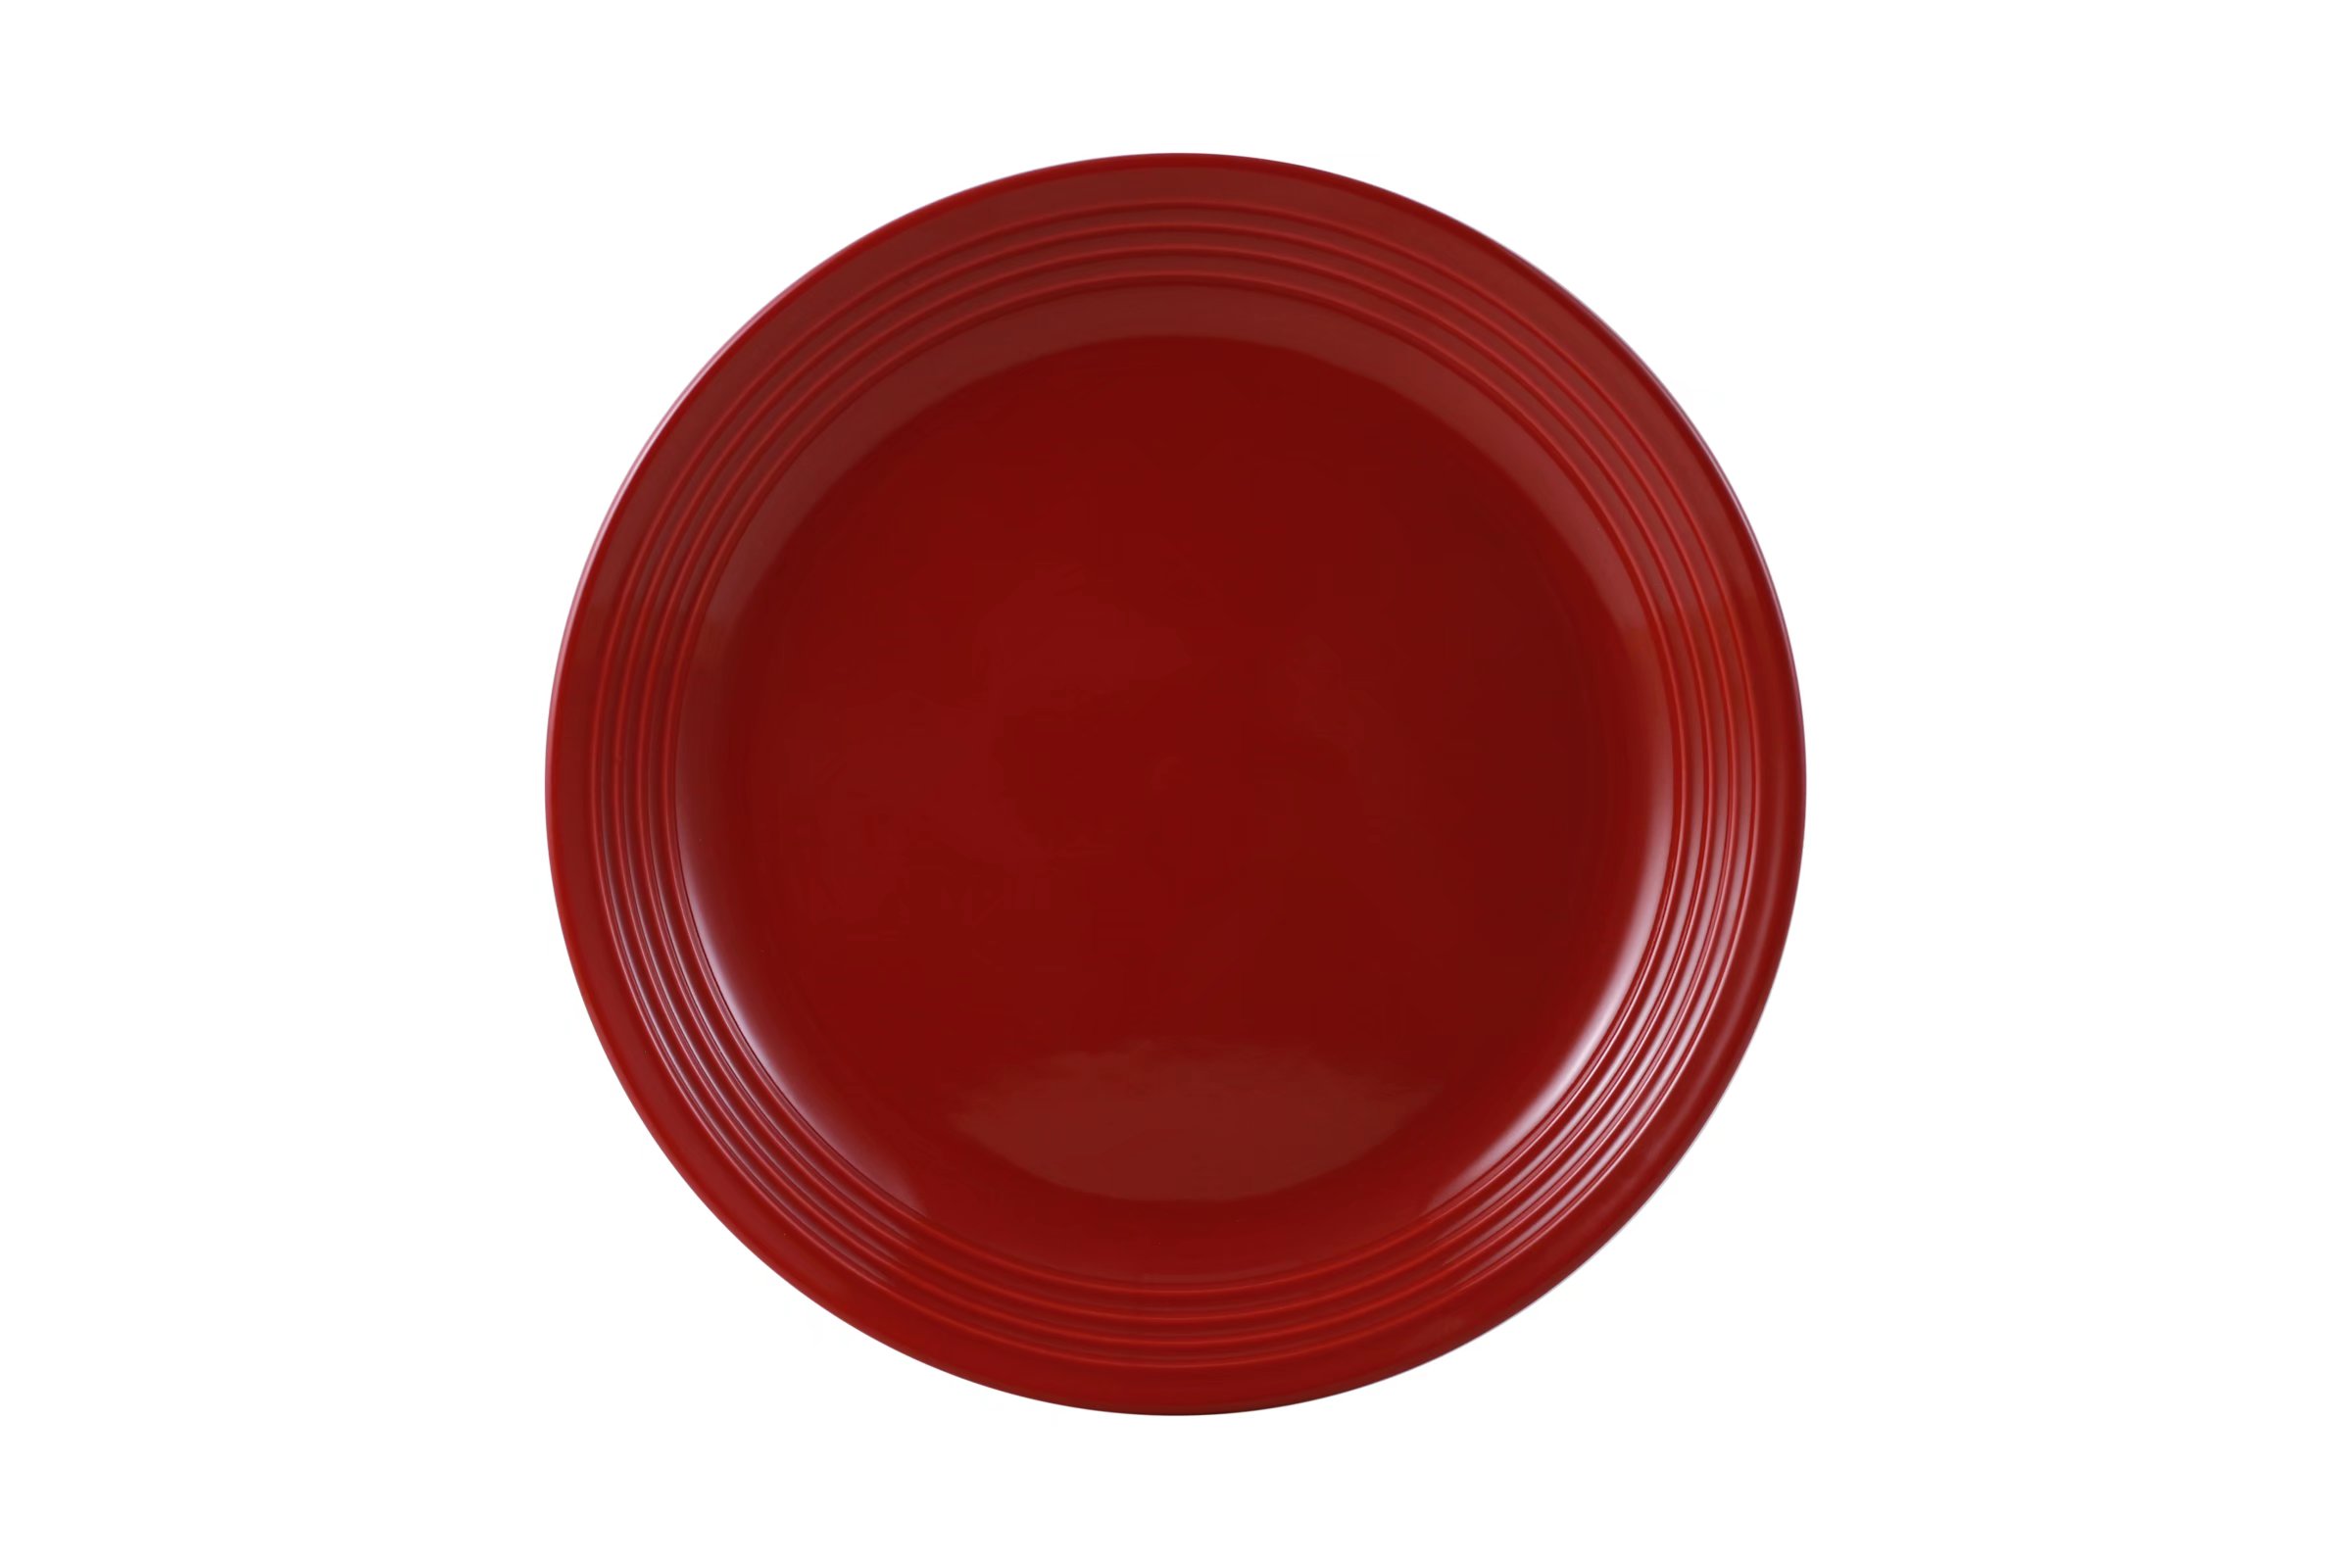 Mainstays Chiara Red Stoneware Dinnerware Set, 16-Pieces - image 5 of 10